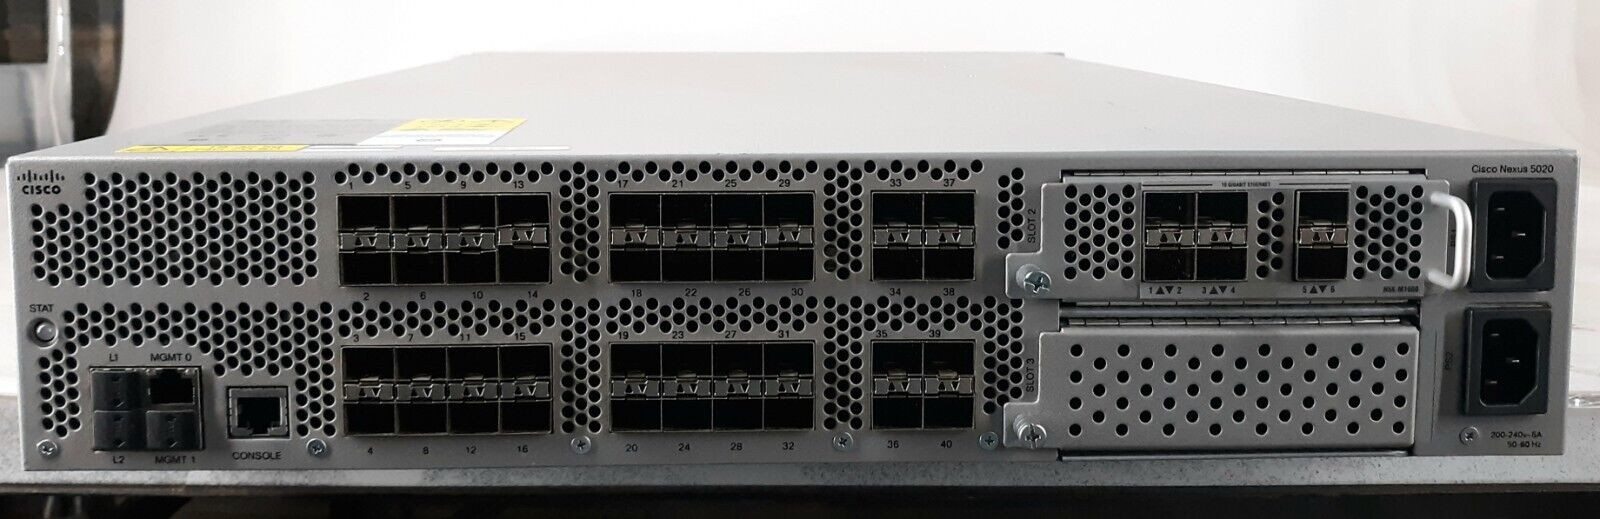 Cisco Nexus 5020 N5K-C5020P-BF V01 Ethernet Switch w/ N5K-M1600 + 2x 1200w PSU